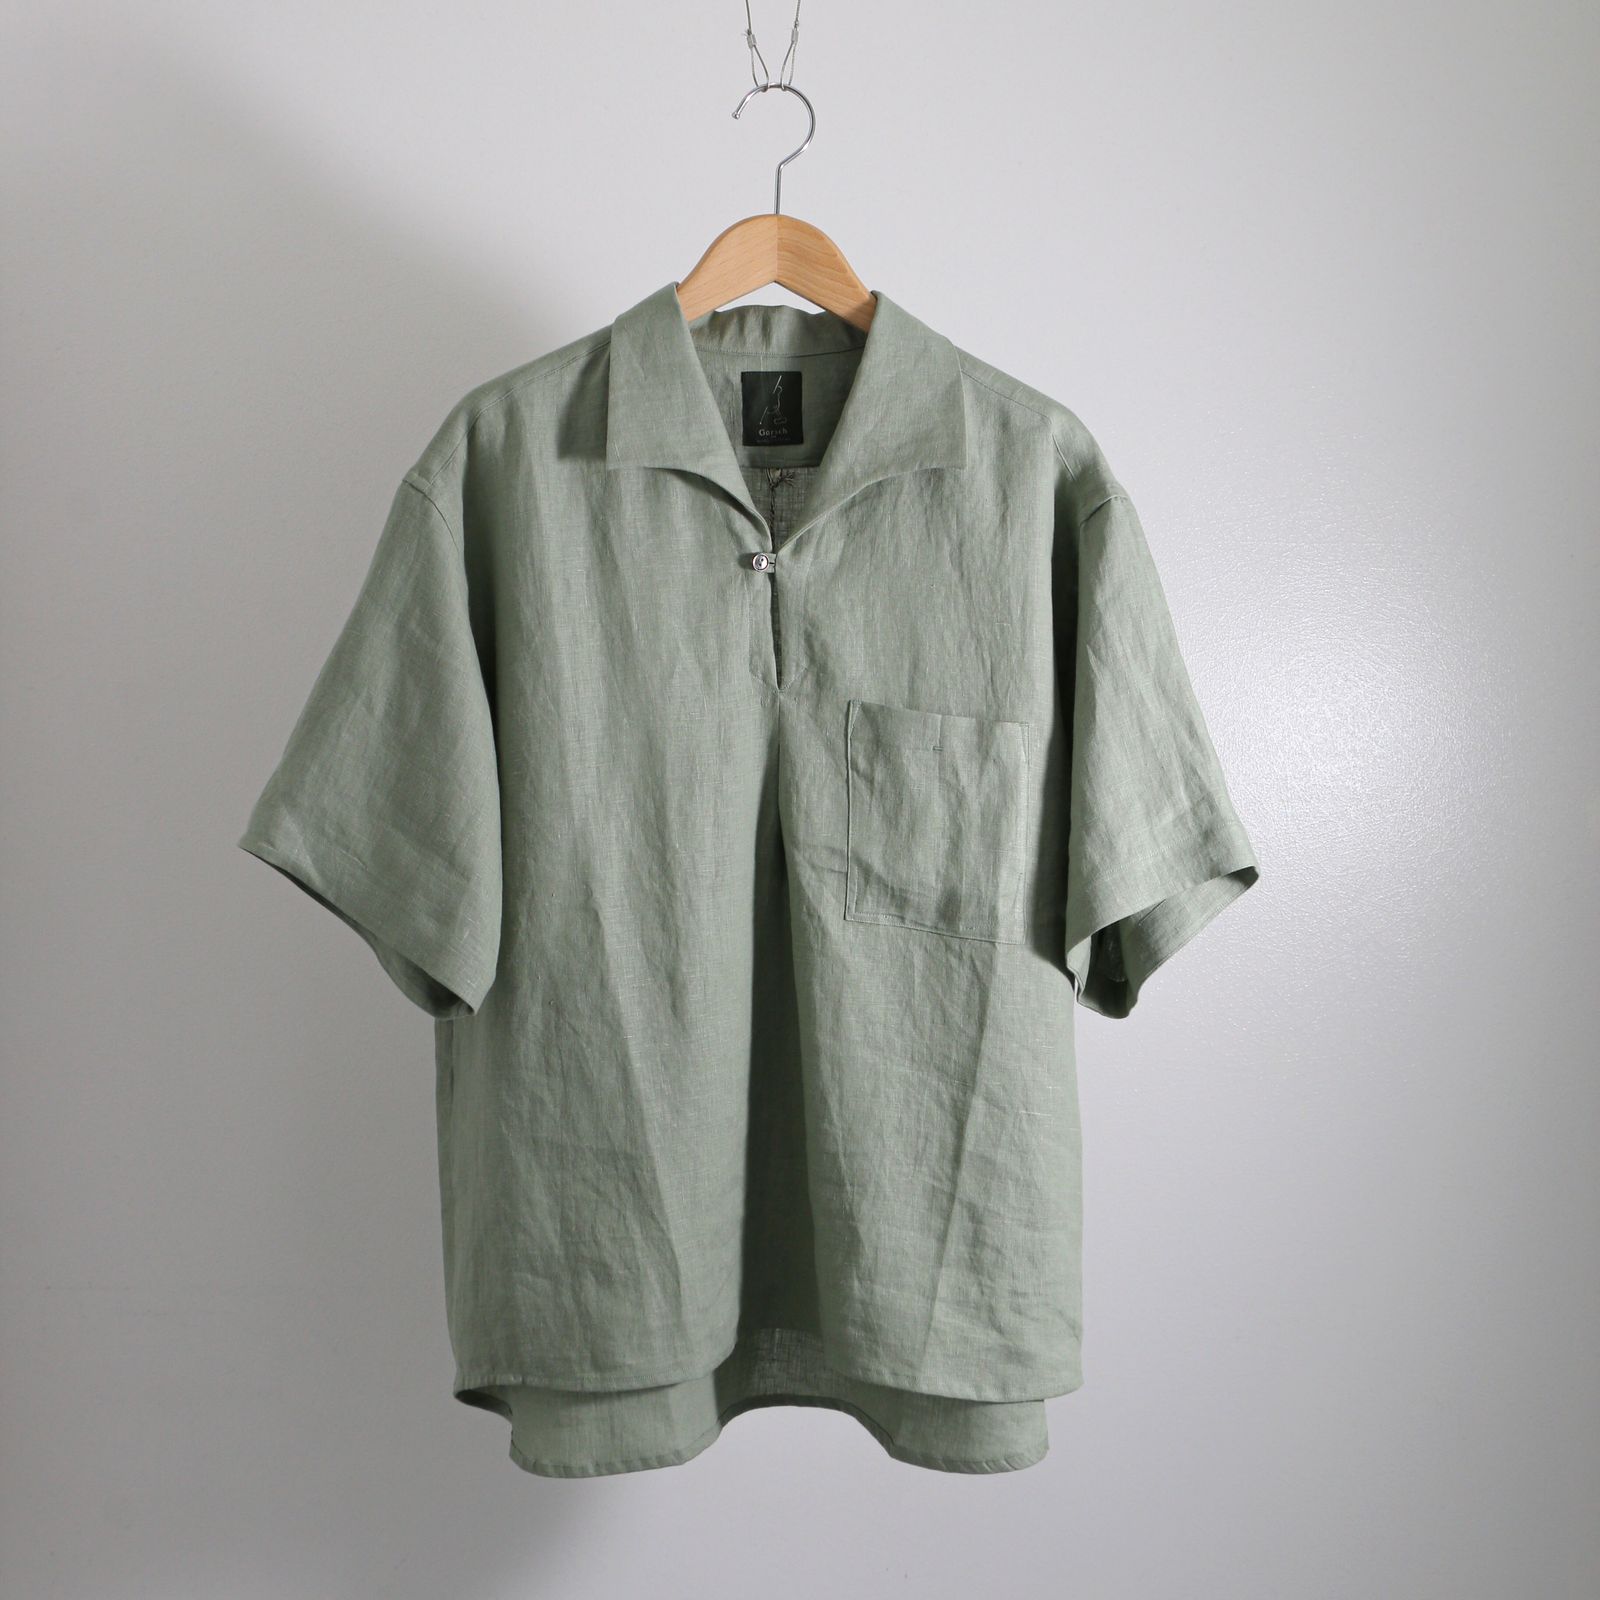 Gorsch Capli short sleeve shirt Field Green / カプリショートスリーブシャツ / - 48